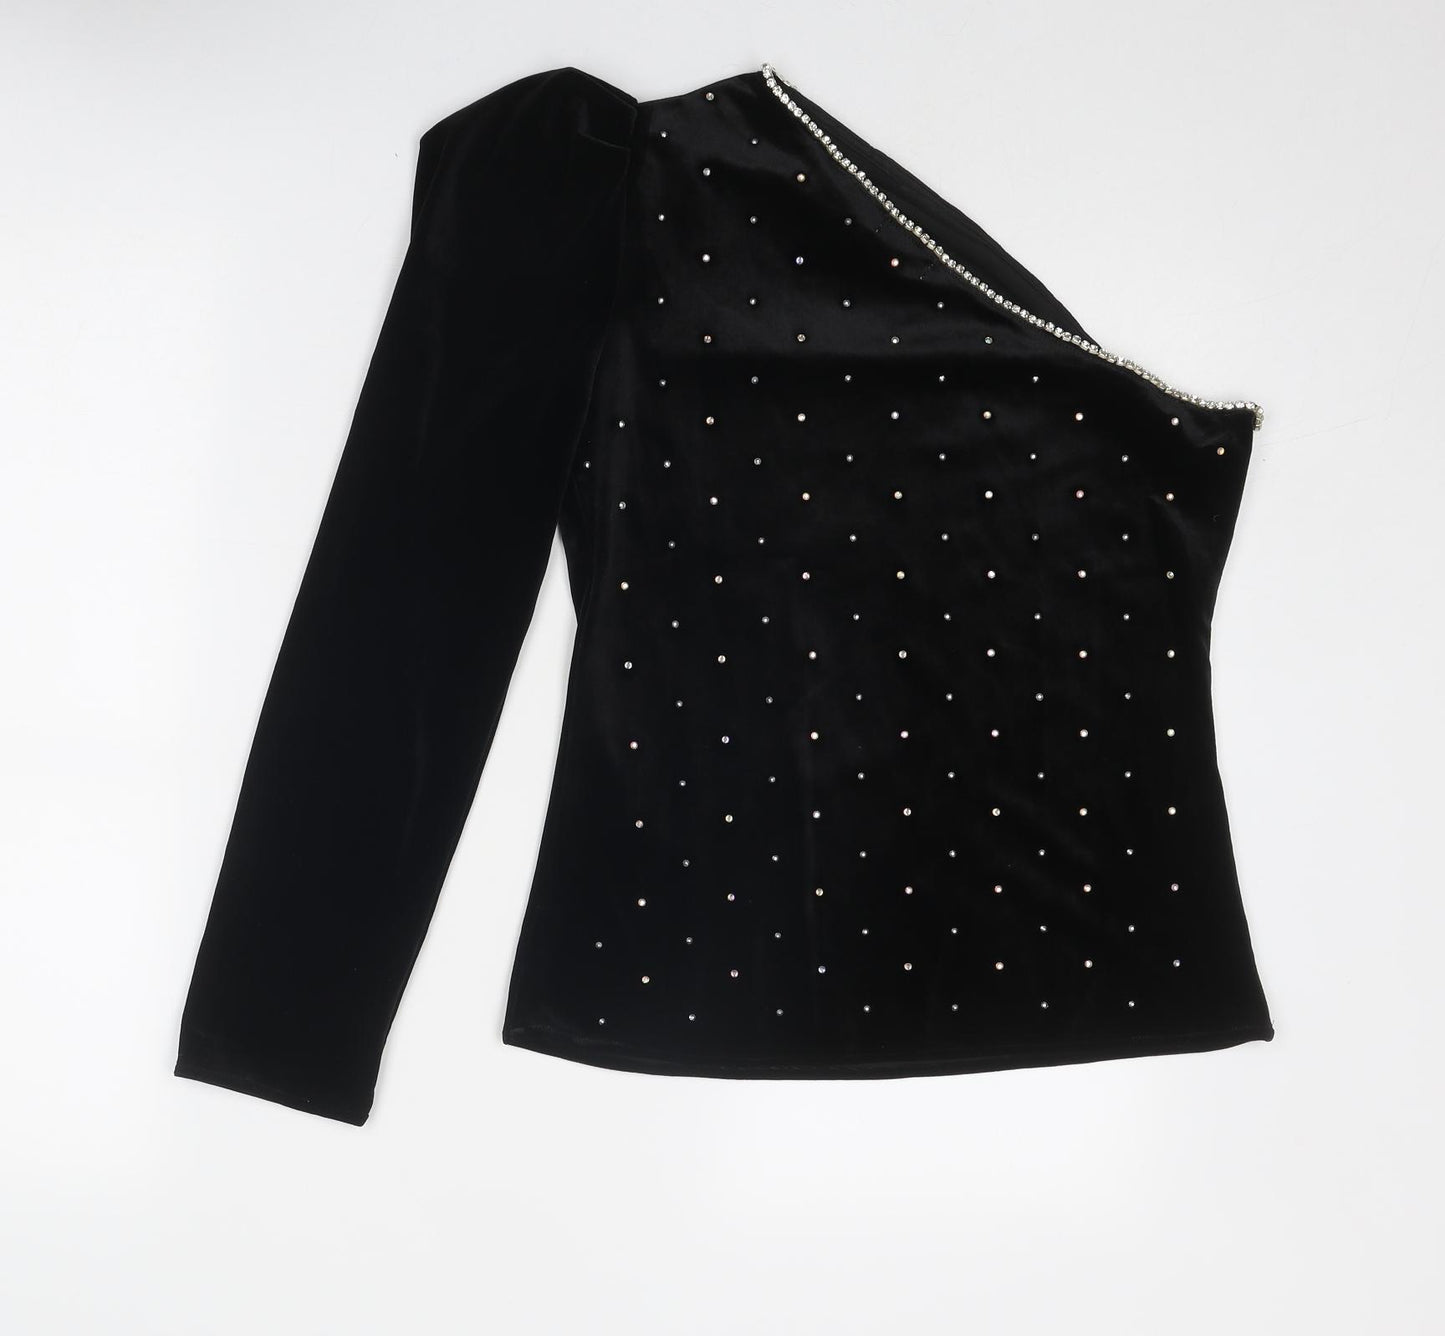 NB Avenue Womens Black Cotton Basic Blouse Size L One Shoulder